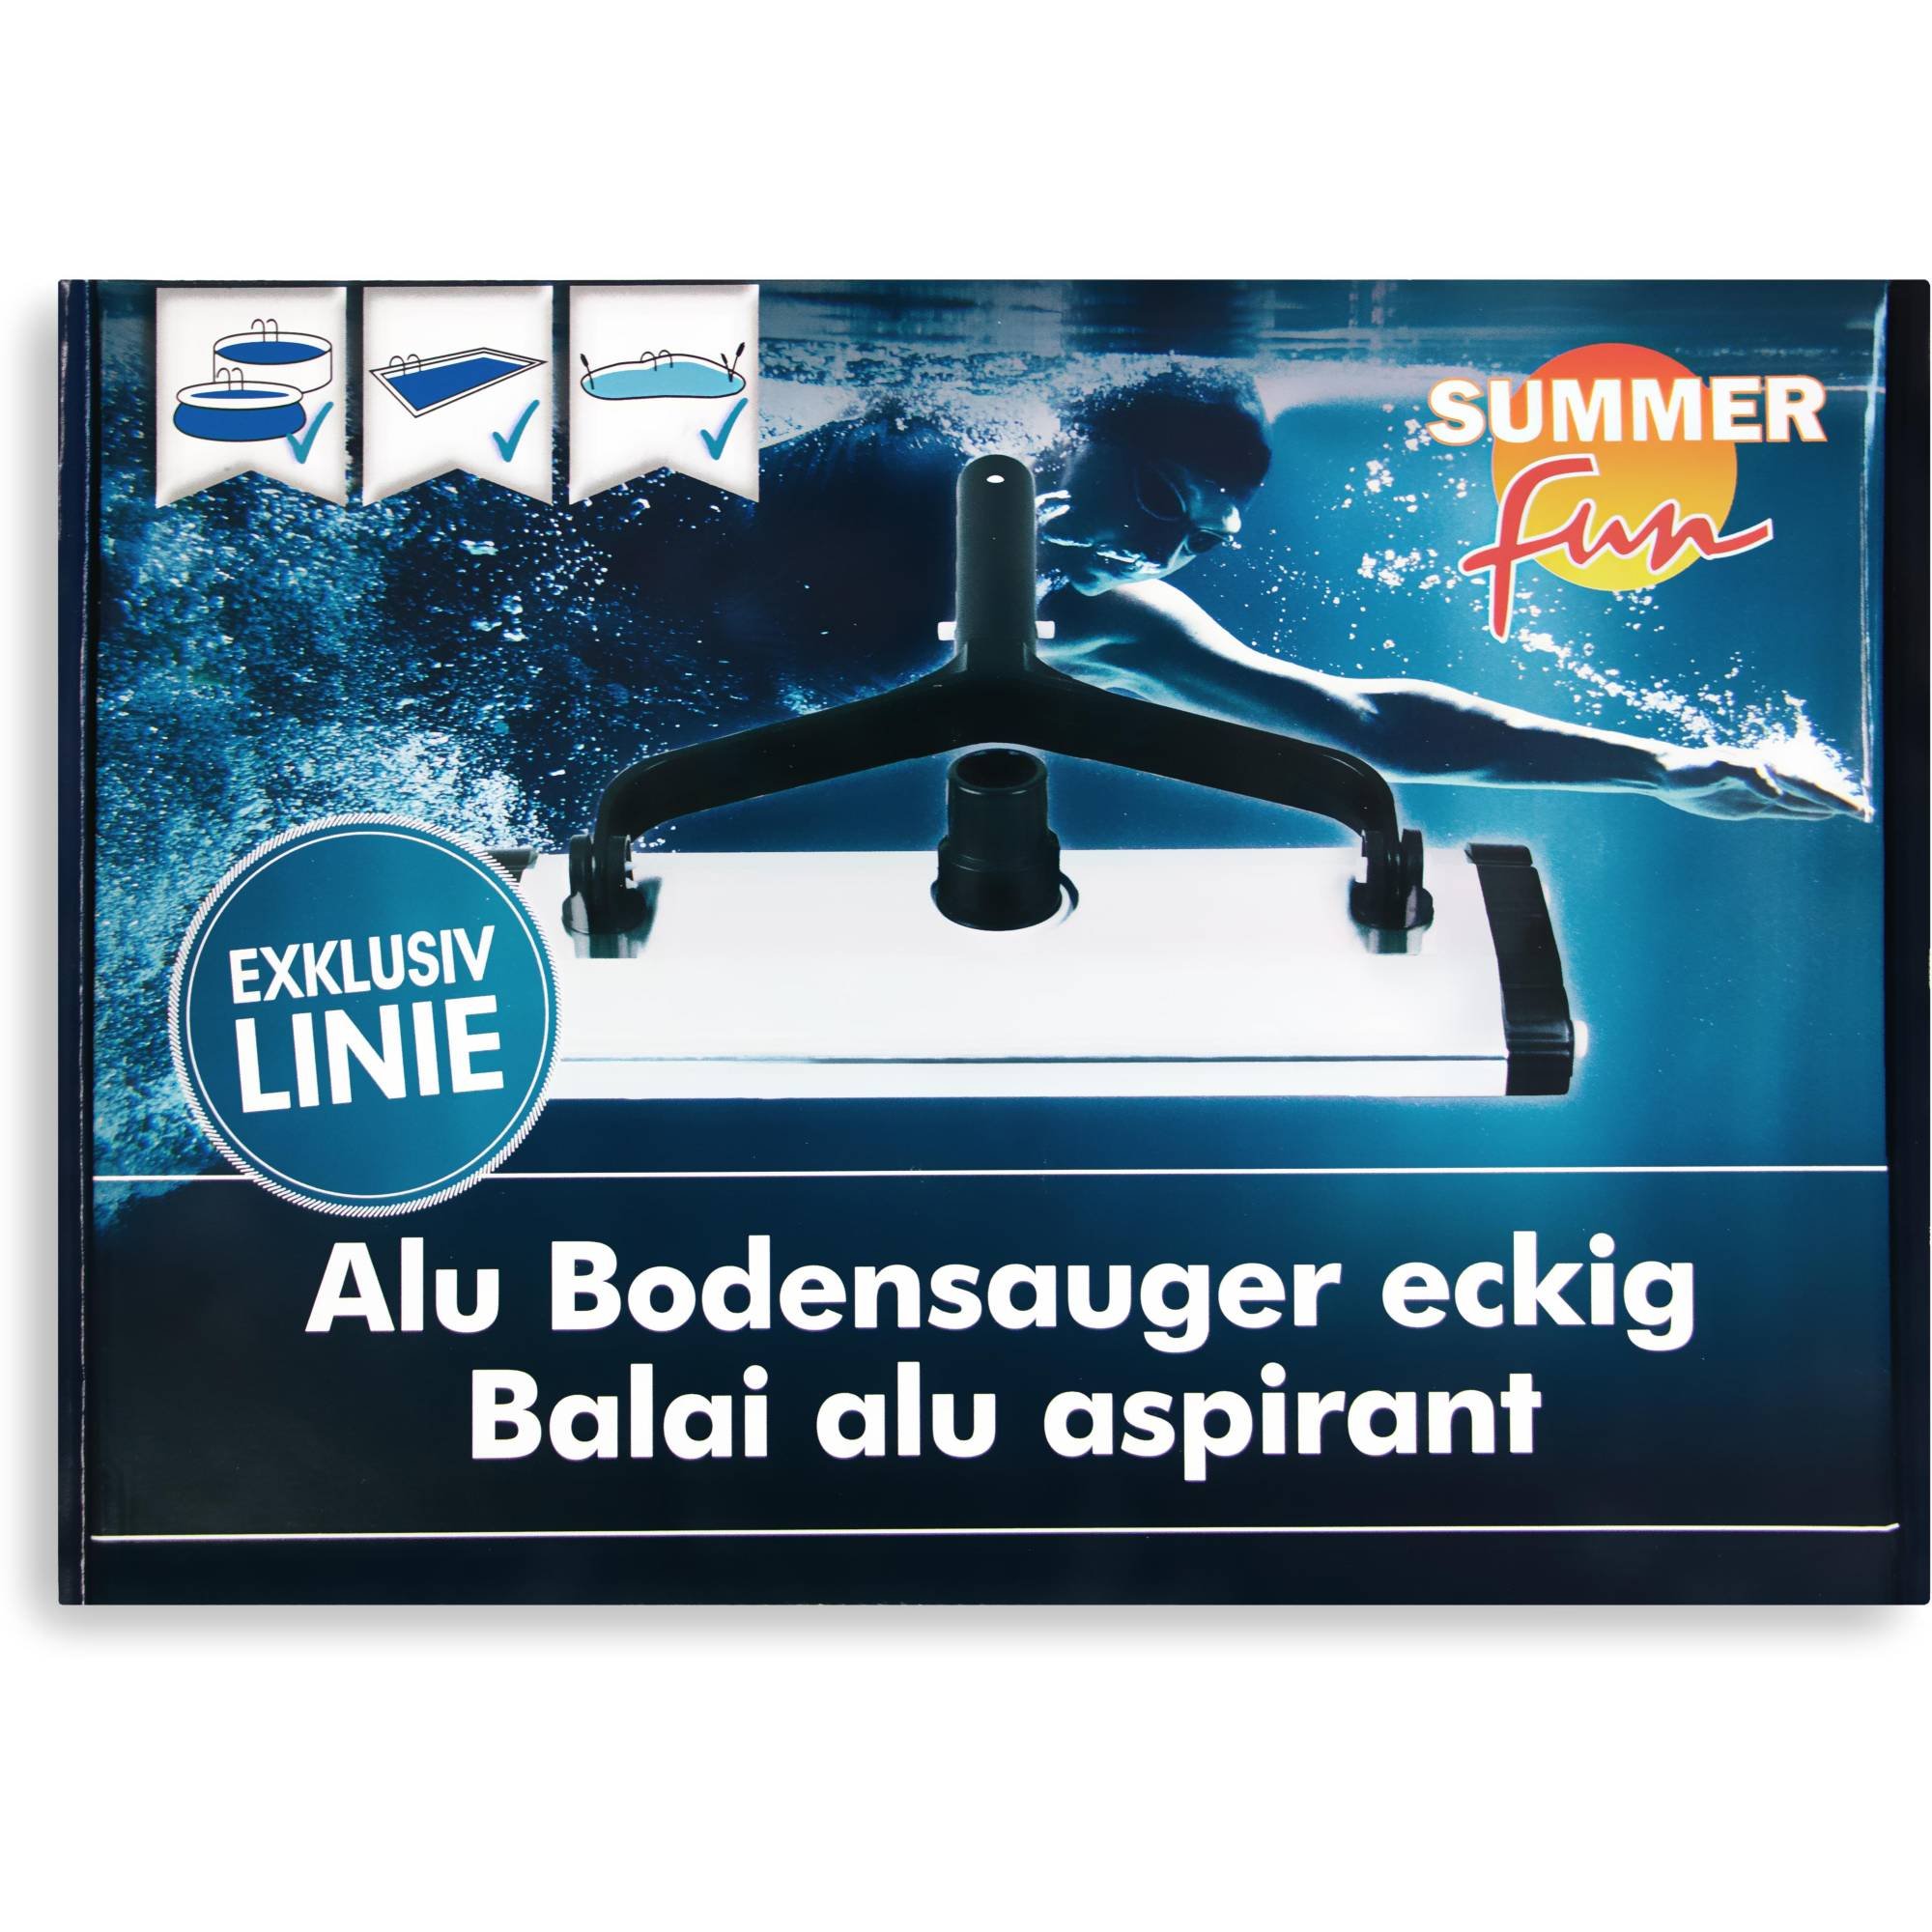 Exklusiv Summer Fun Zubehör Alu Bodensauger eckig